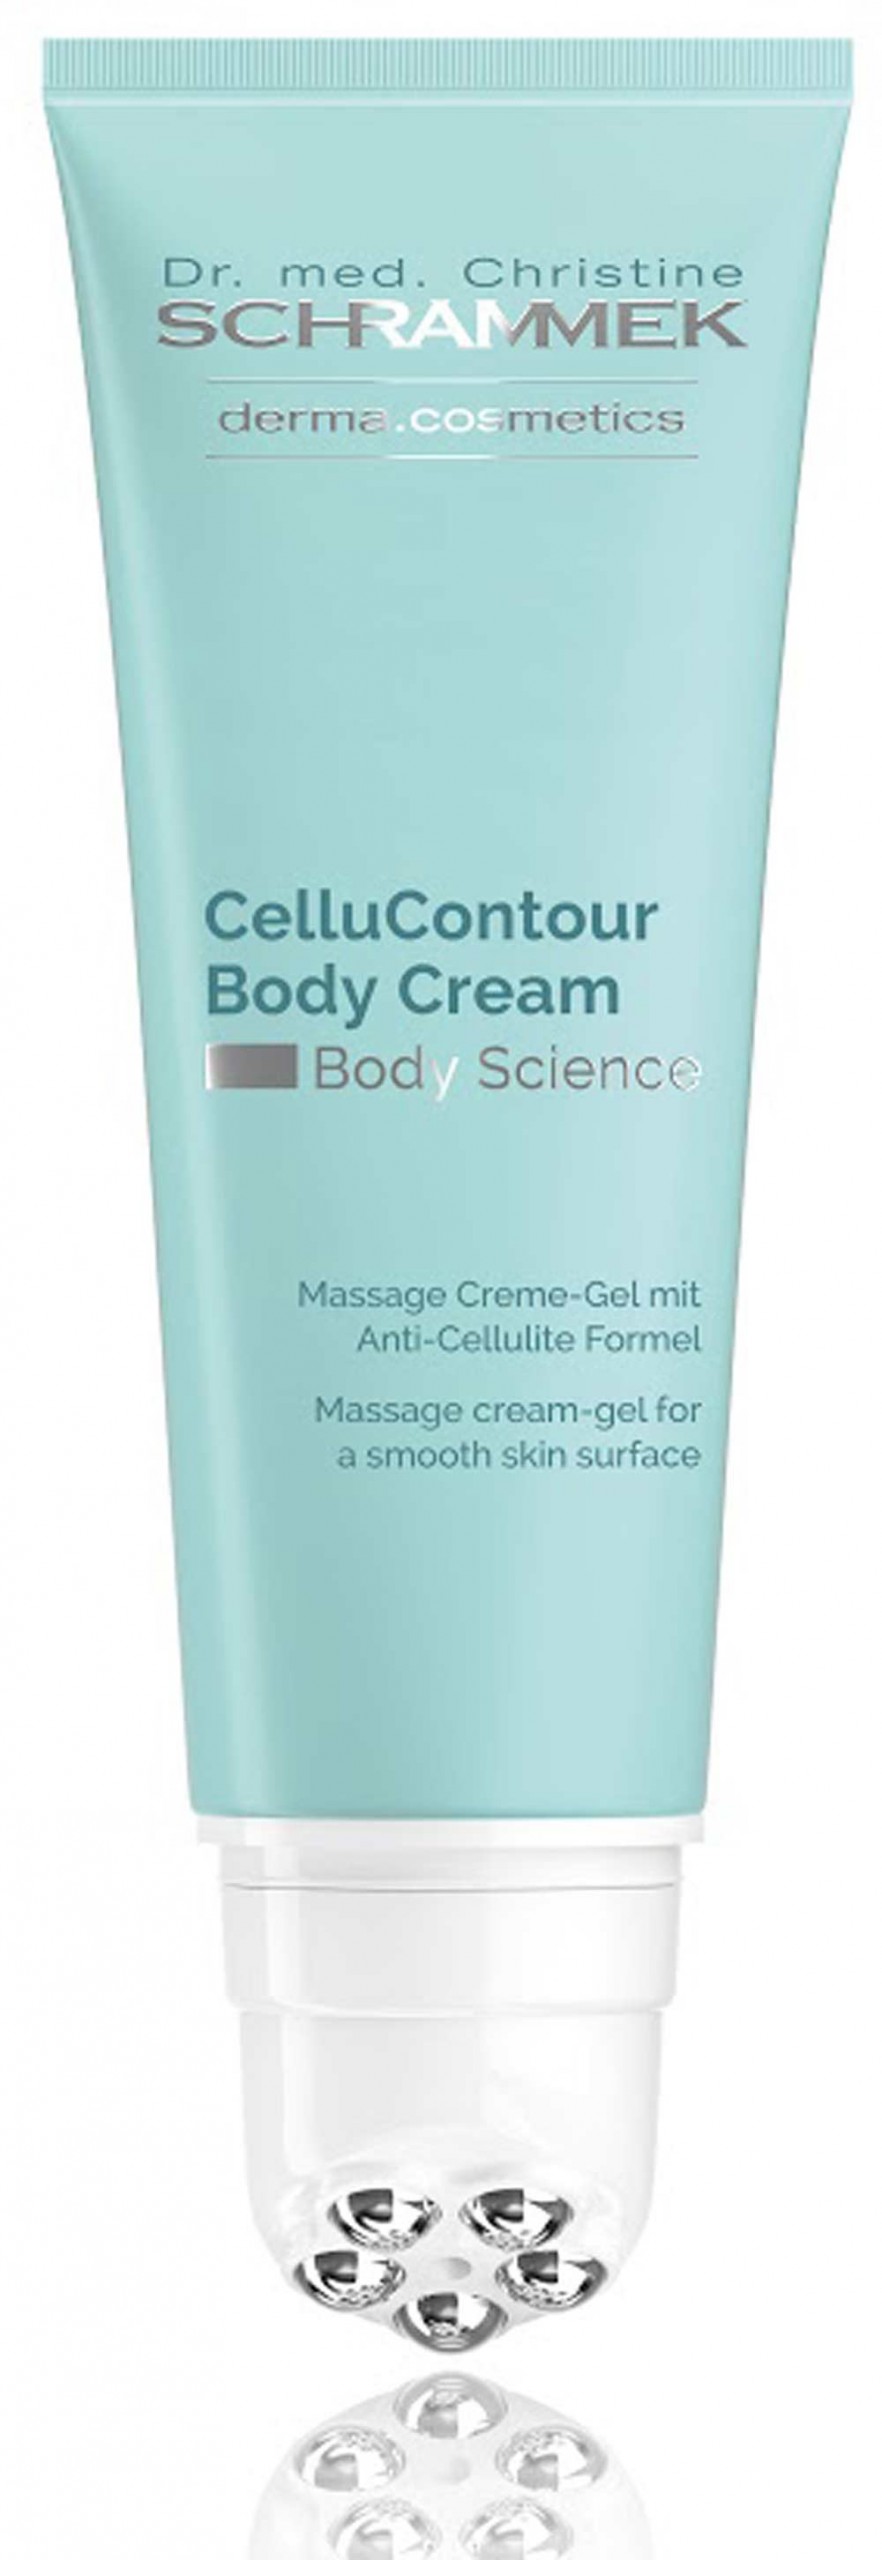 CelluContour-Body-Cream_